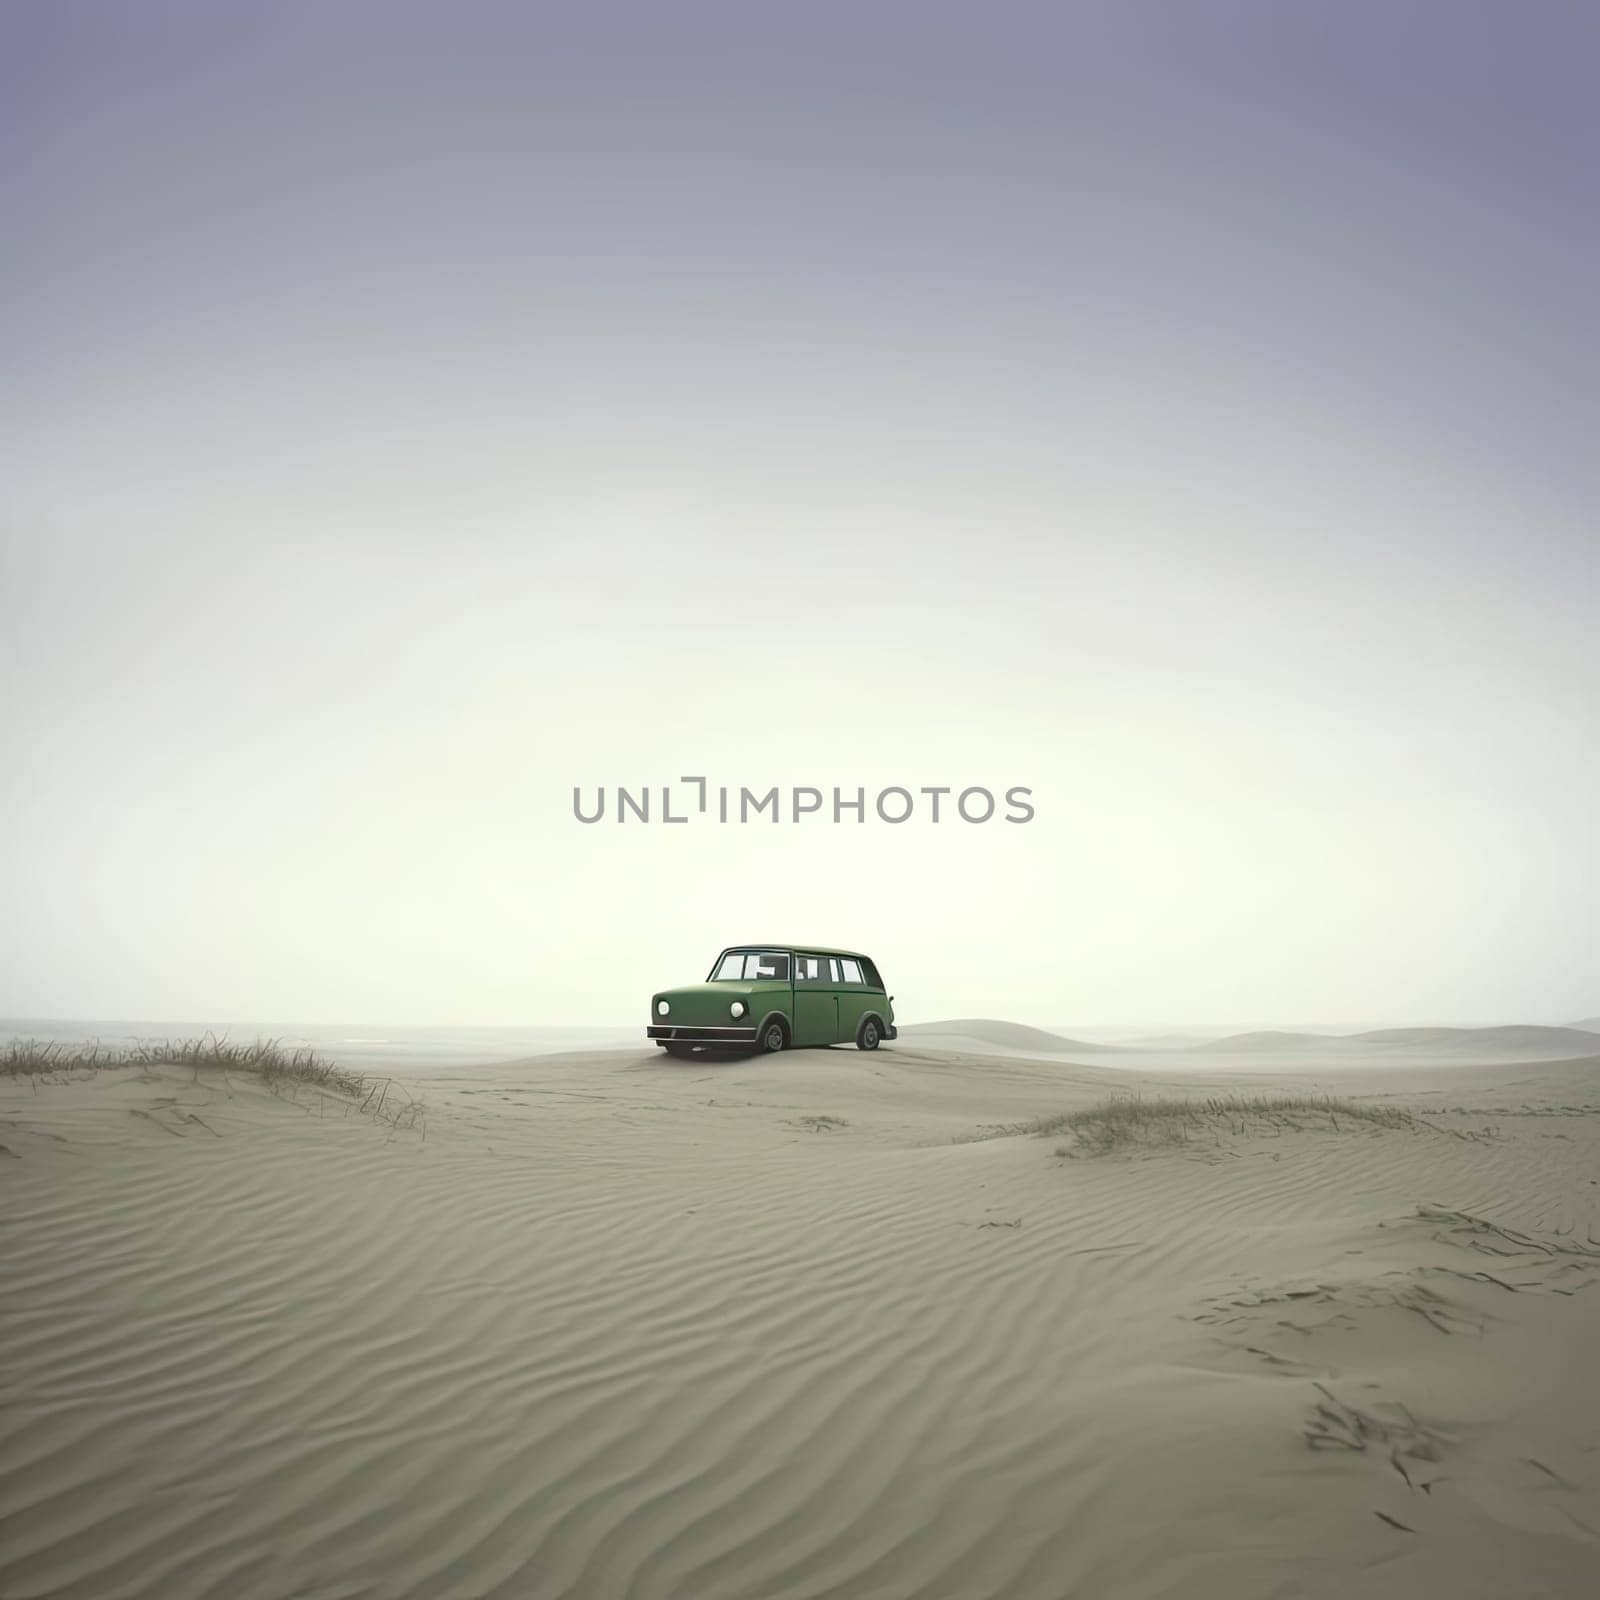 Car in the sand dunes of the desert by eduardobellotto